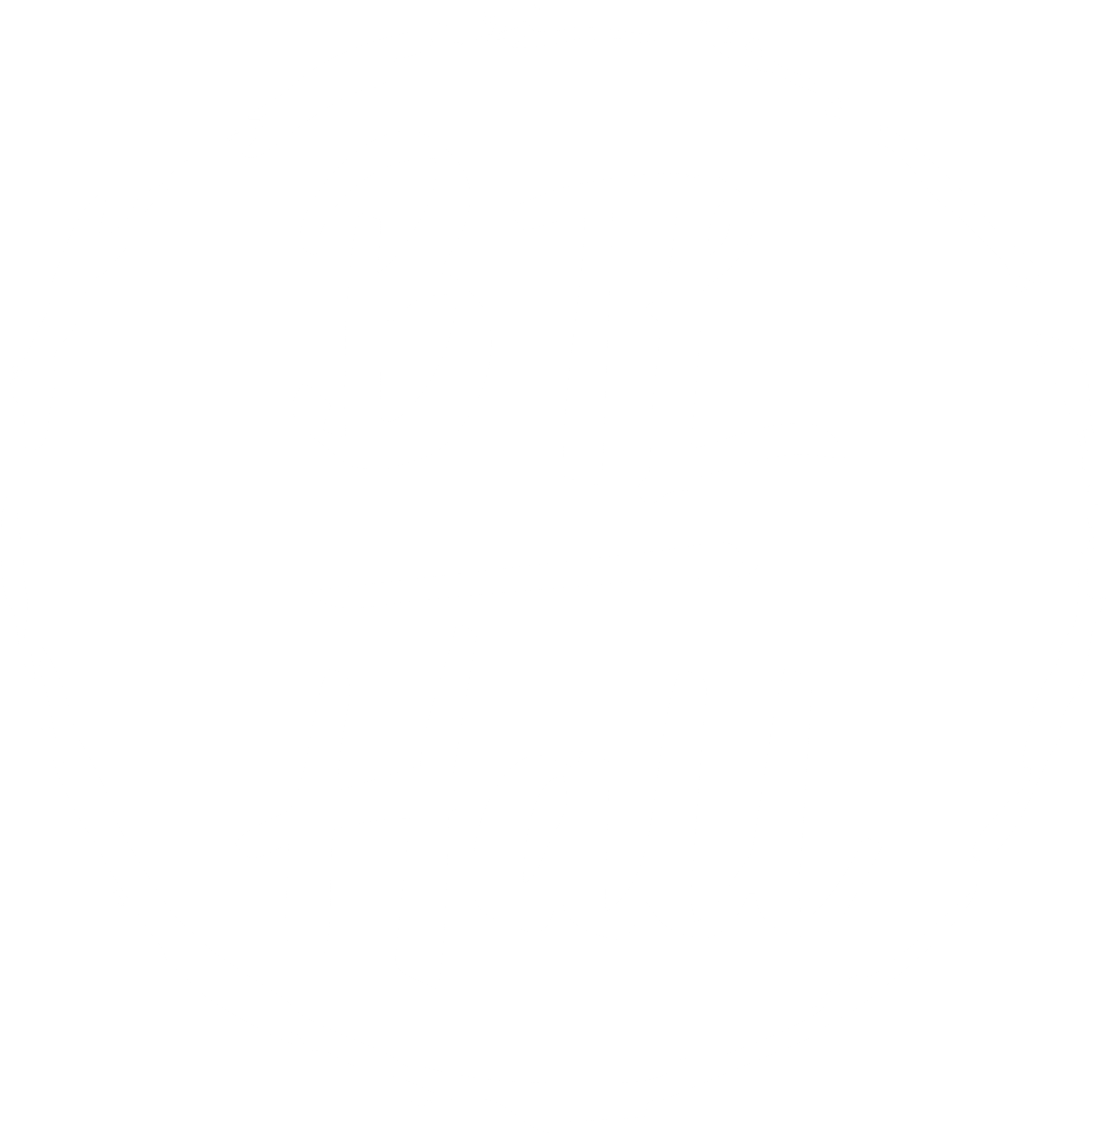 BTL-Hall